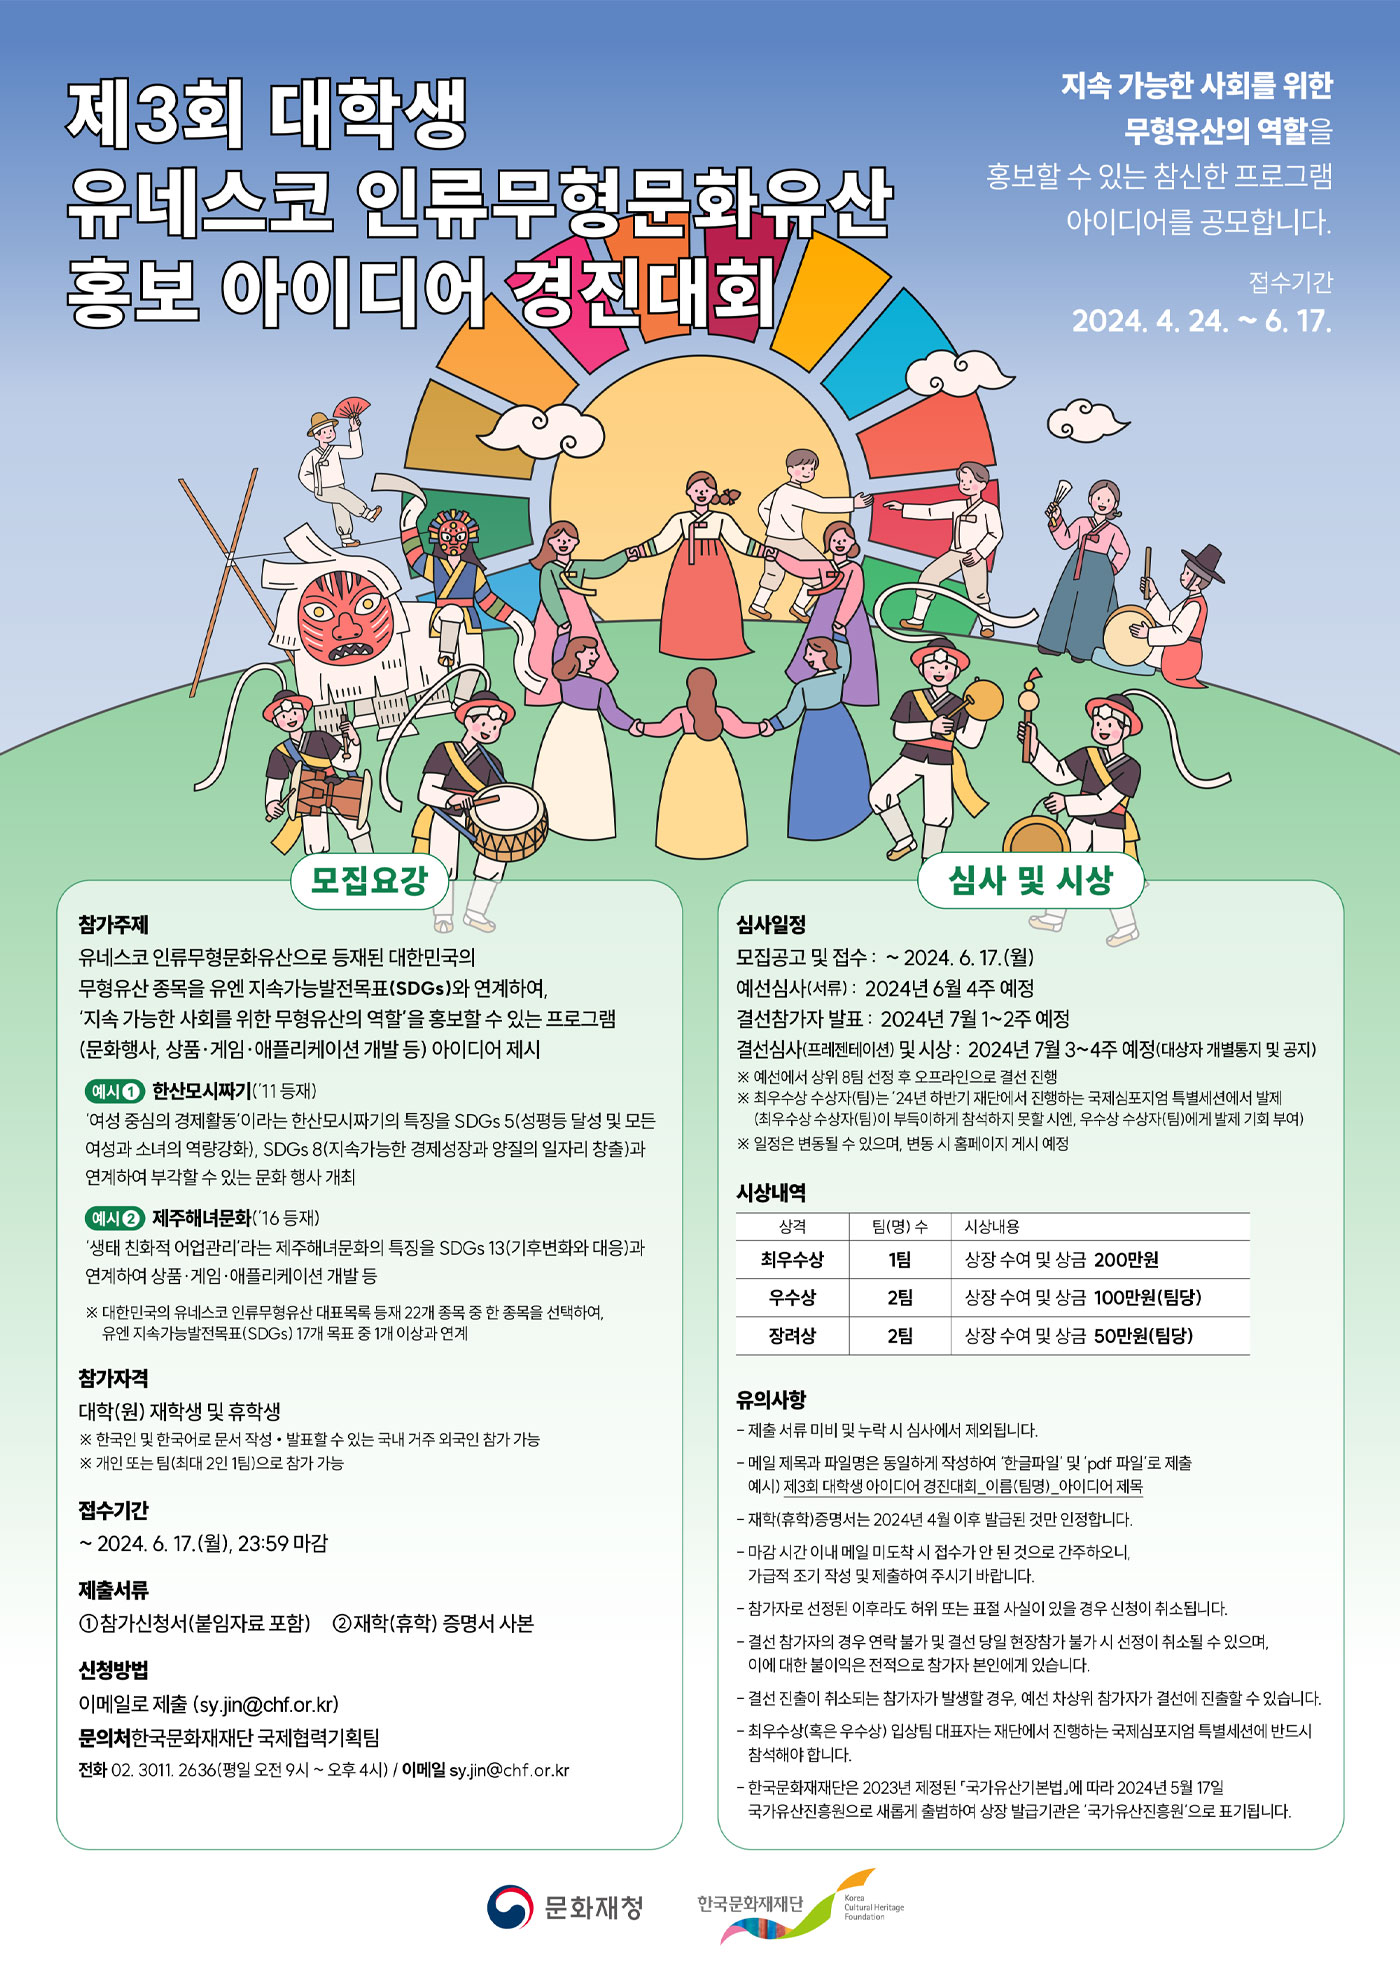 제3회 대학생 유네스코 인류무형문화유산 홍보 아이디어 경진대회 공고문 포스터